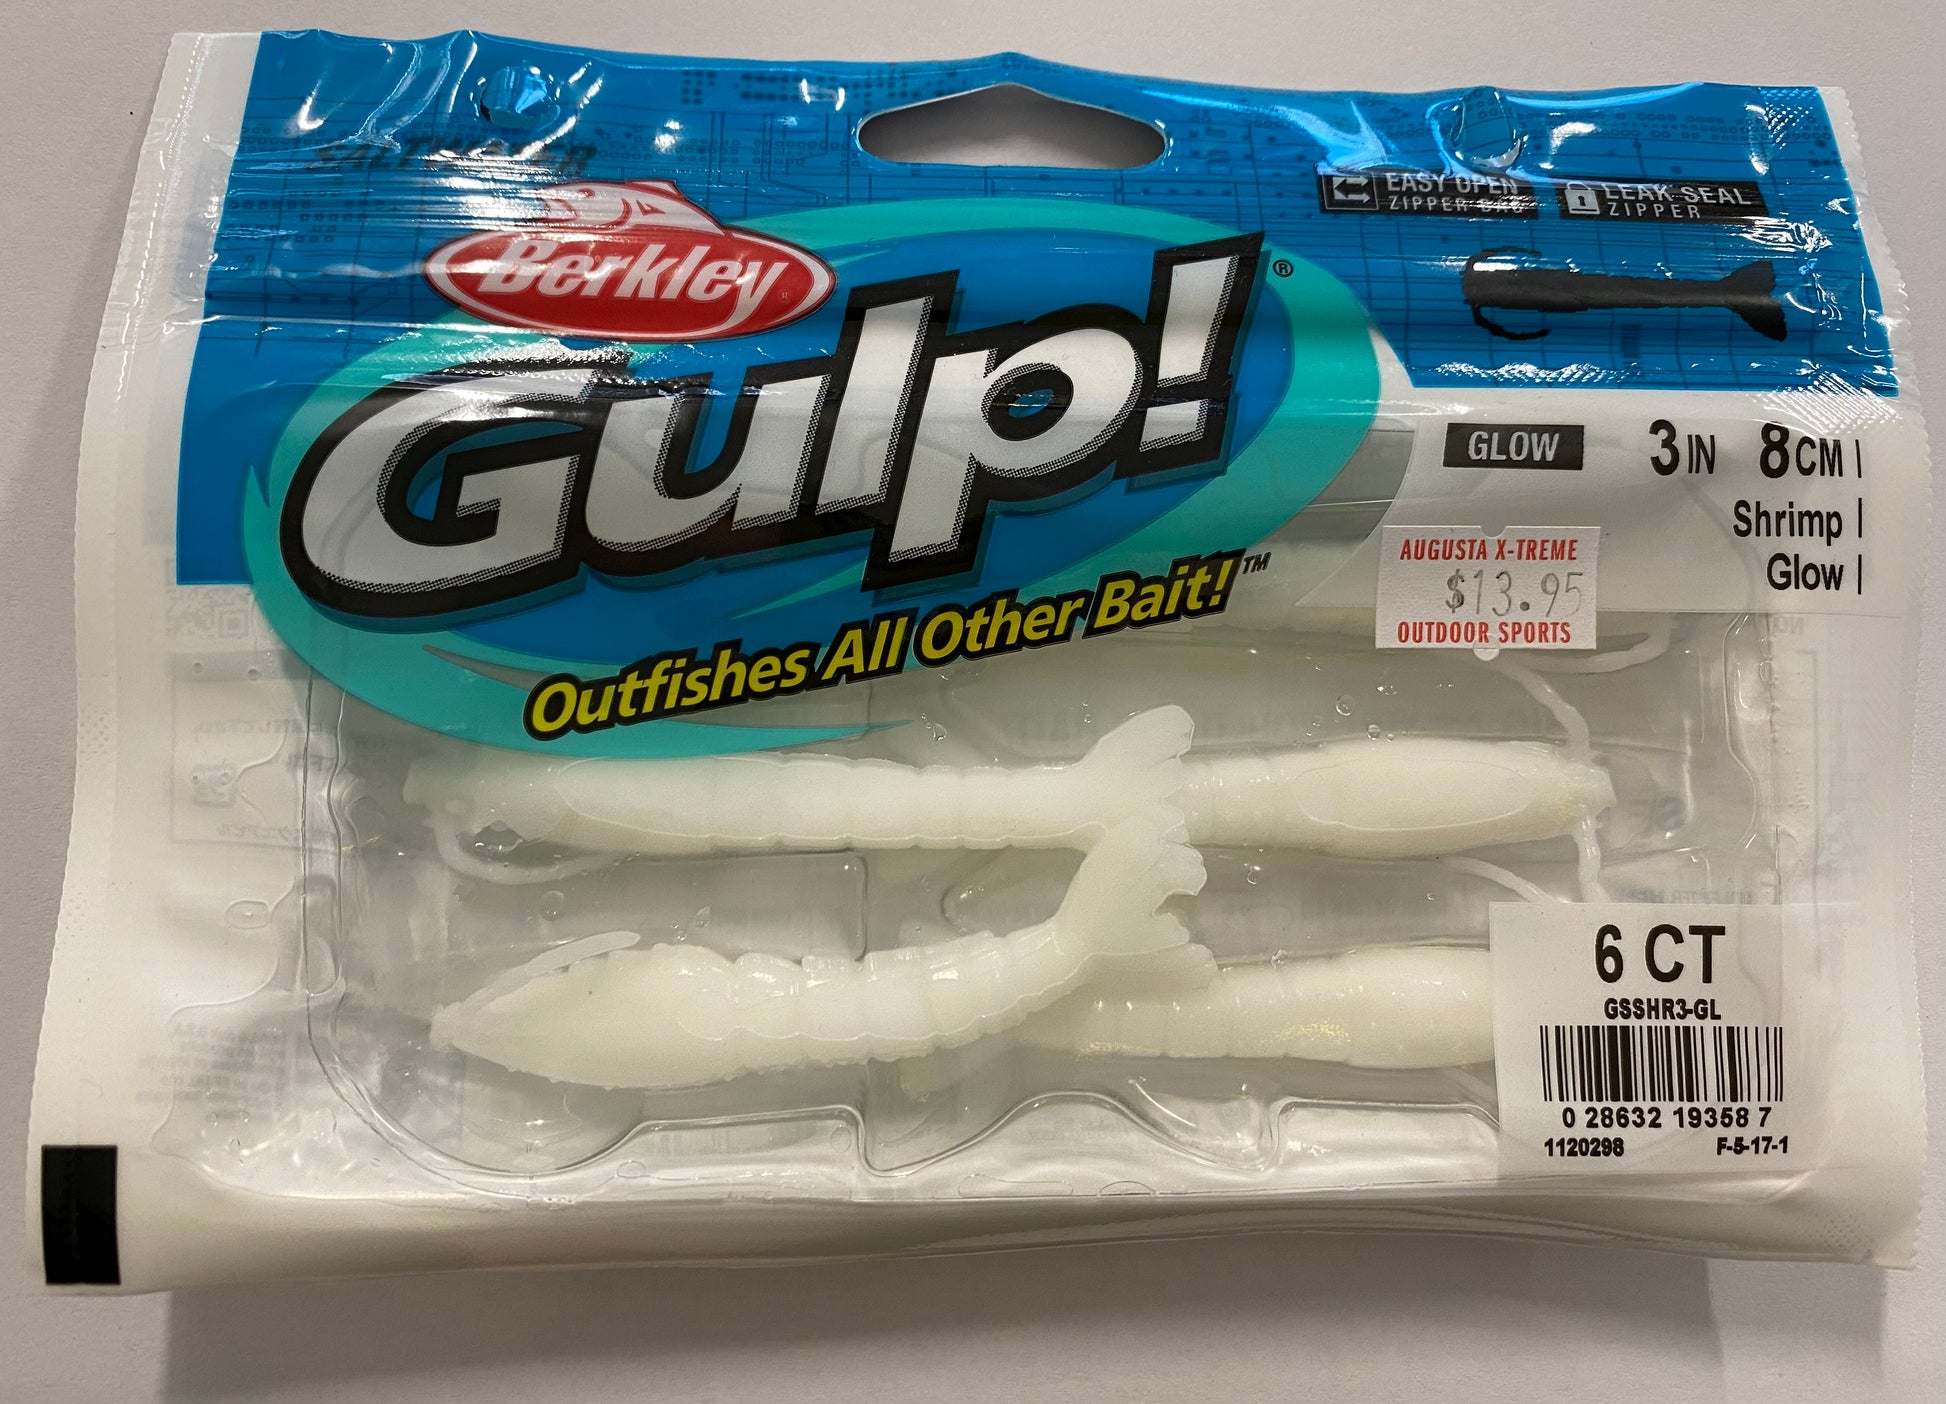 Gulp Shrimp 3IN 8cm Glow – Augusta Xtreme Outdoor Sports